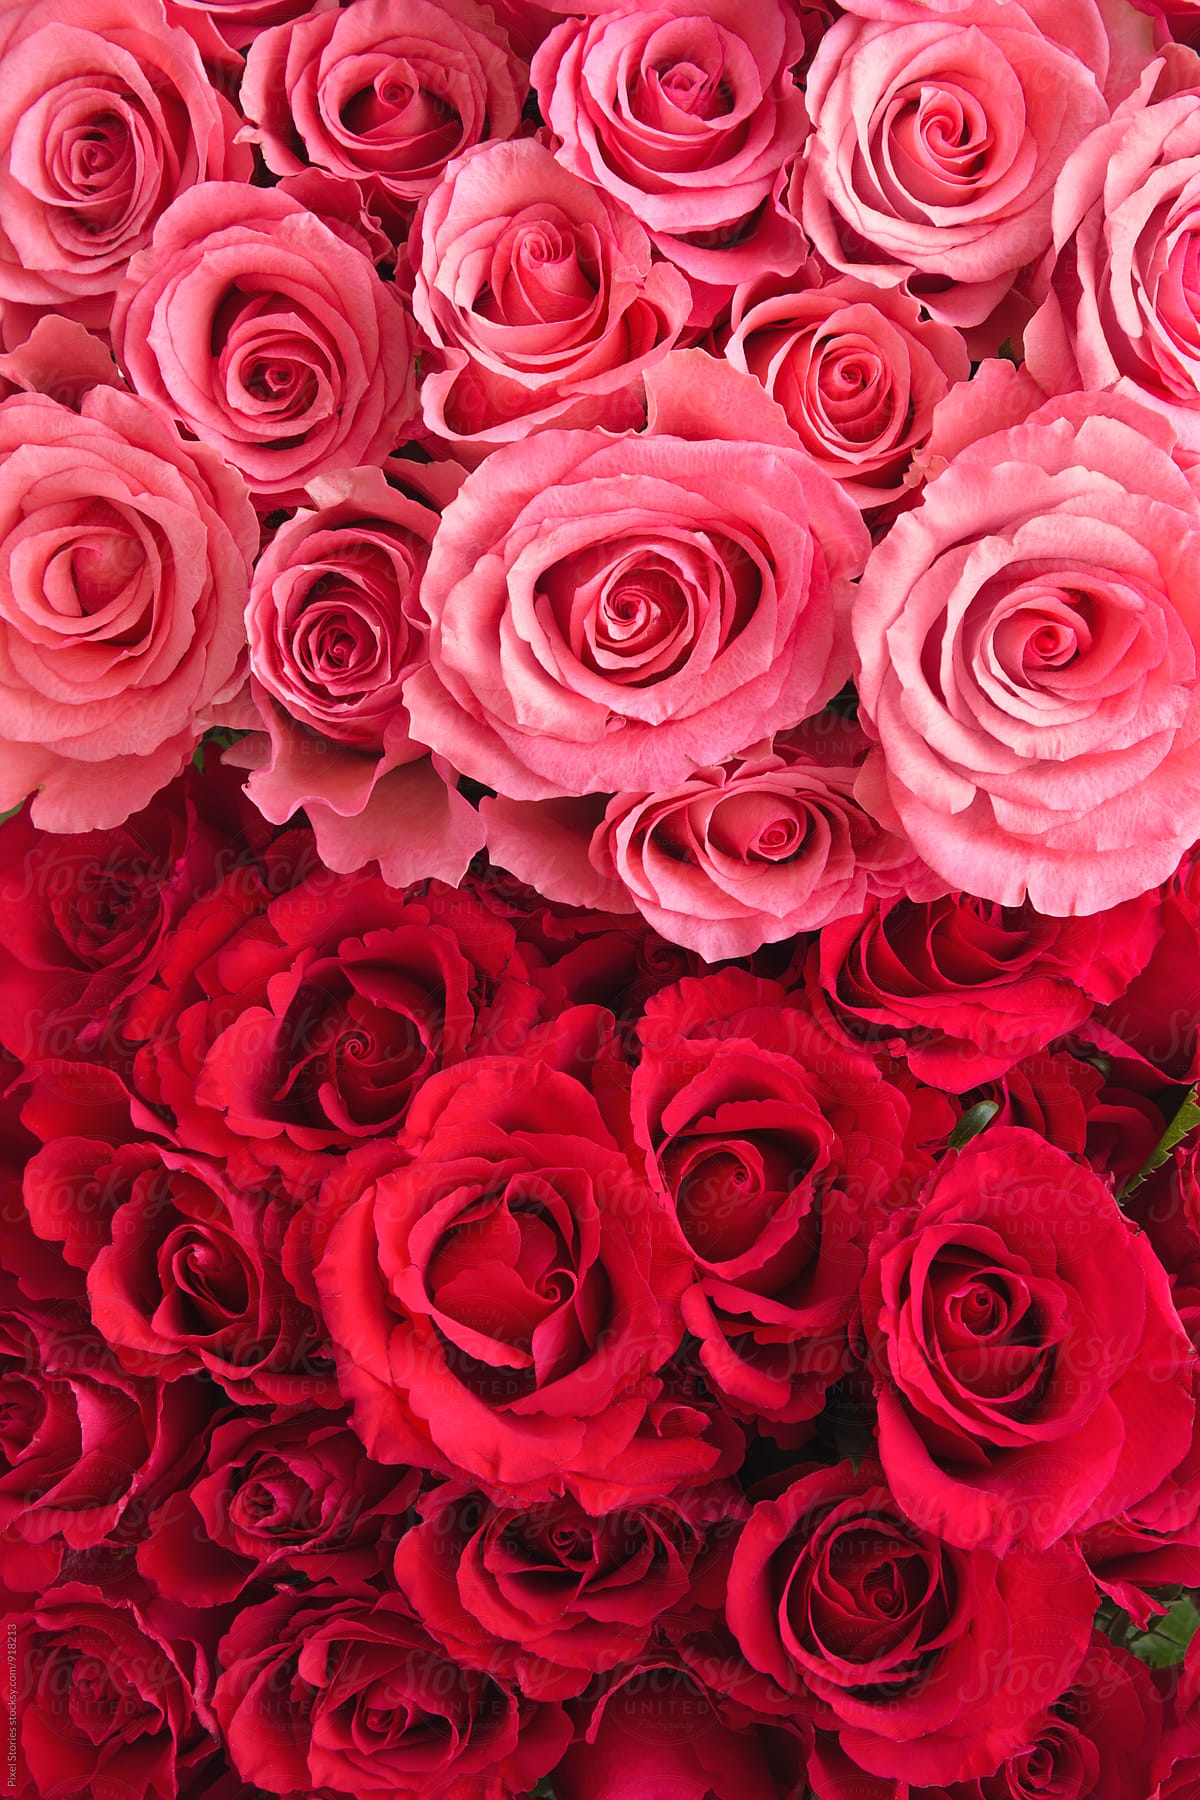 Hình nền hoa hồng hồng và đỏ sẽ khiến bạn cảm thấy vô cùng phấn chấn và thích thú. Nét đẹp tươi sáng của hoa hồng hồng và sự rực rỡ, quyến rũ của hoa hồng đỏ sẽ tạo ra một không gian sống động, tươi mới và đầy màu sắc cho màn hình của bạn. Hãy trang trí cho máy tính của bạn những hình nền này để cảm nhận được sự rực rỡ và tươi mới của mùa xuân!